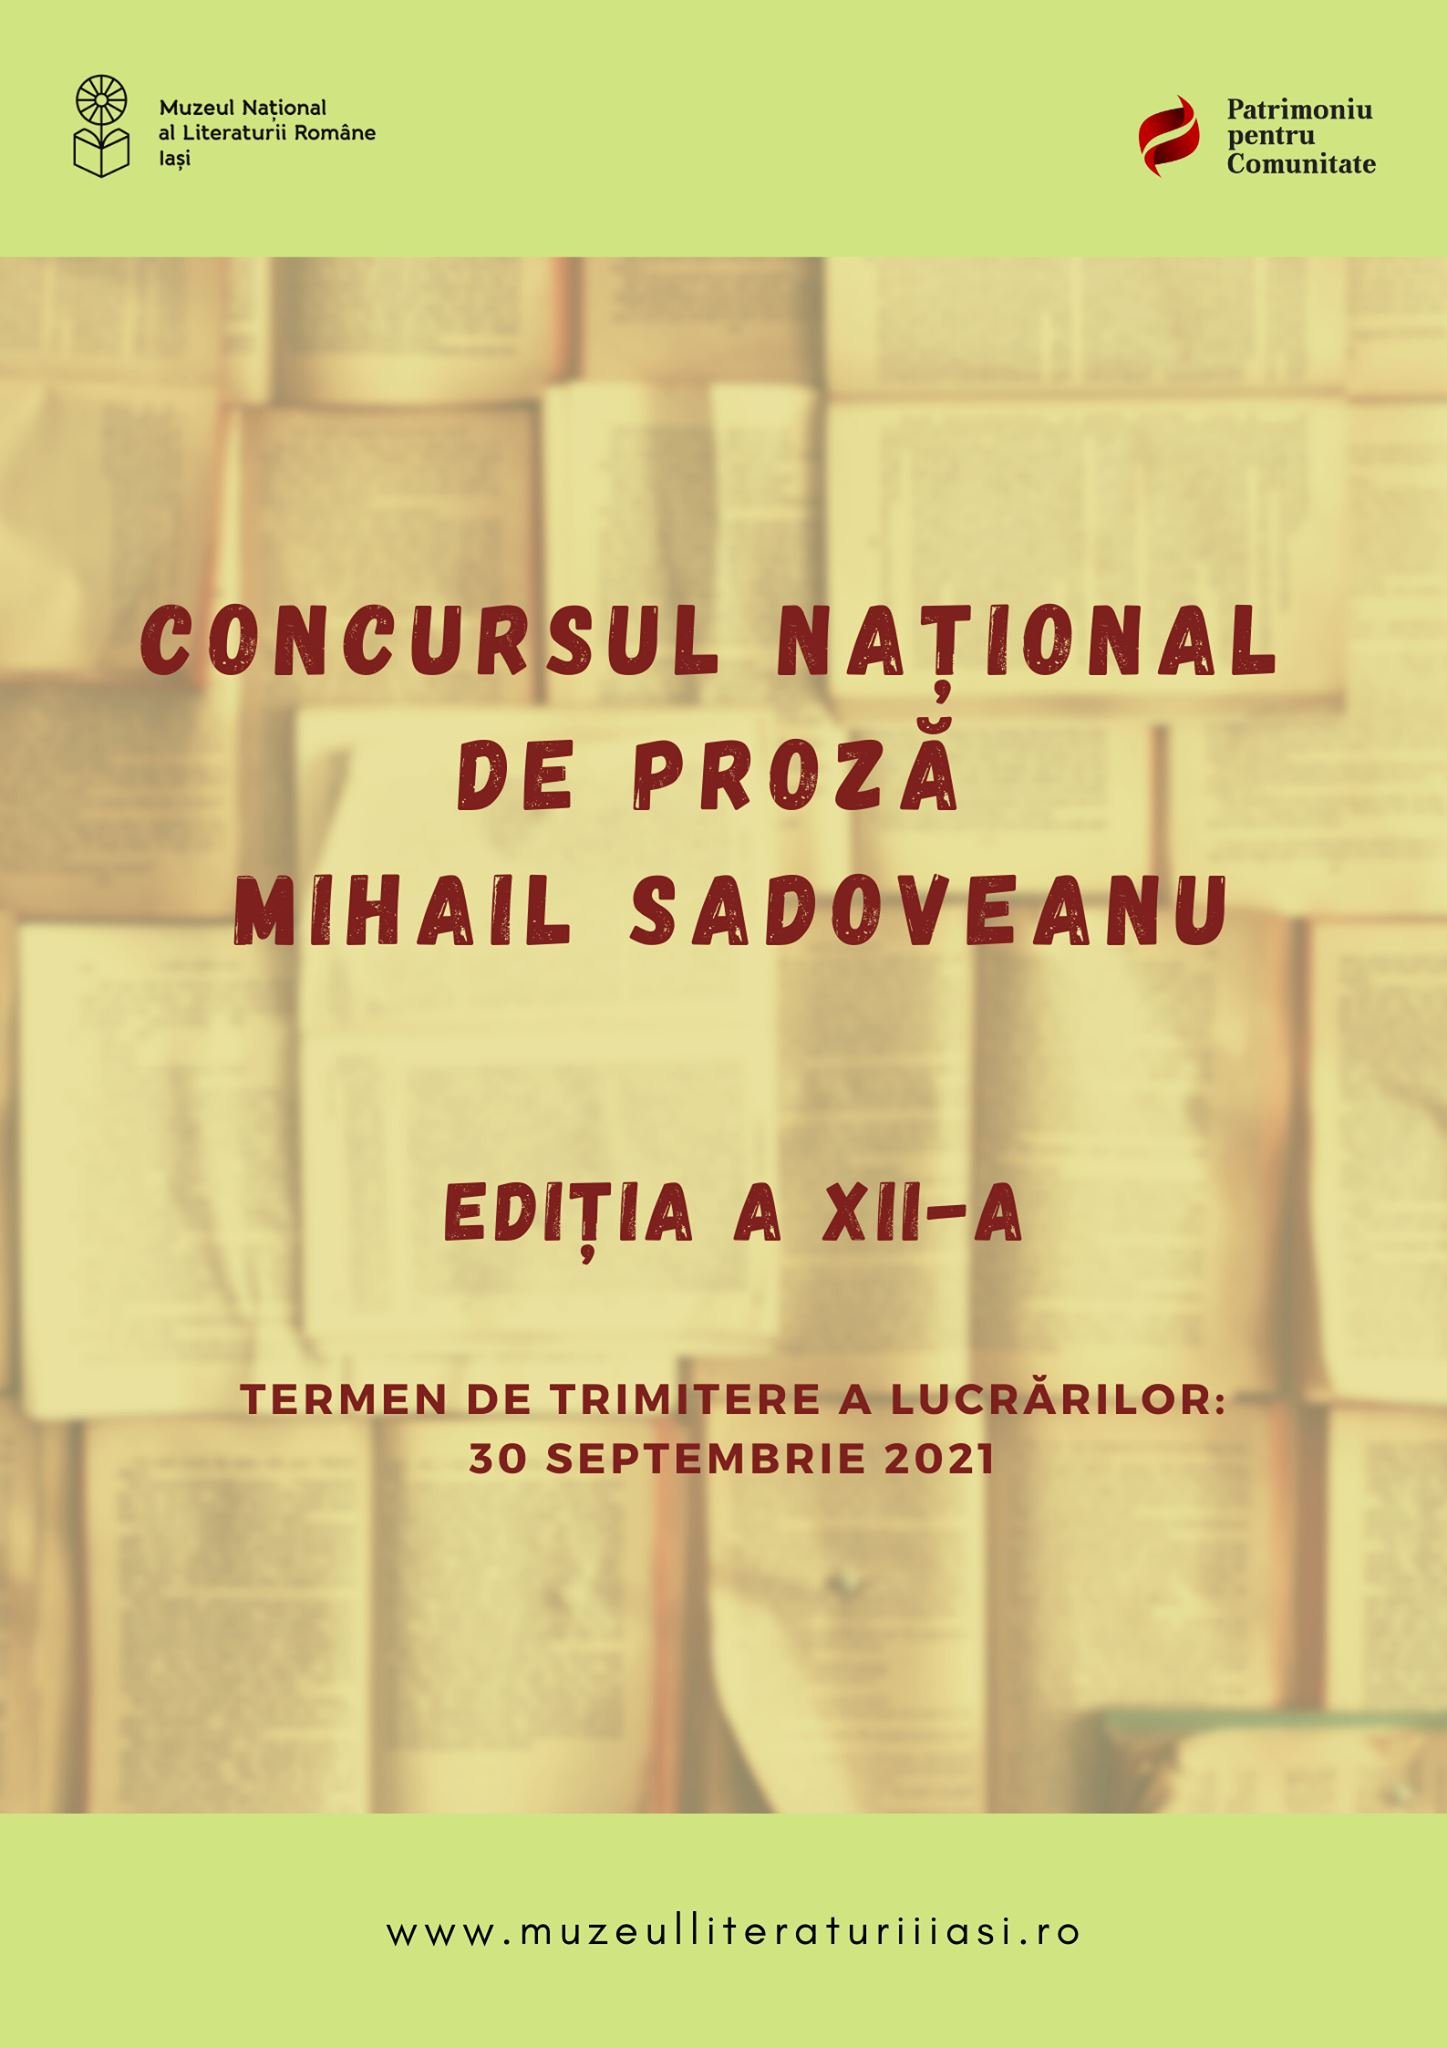  Cum vă puteţi înscrie la concursul de proză organizat de Muzeul Literaturii Române